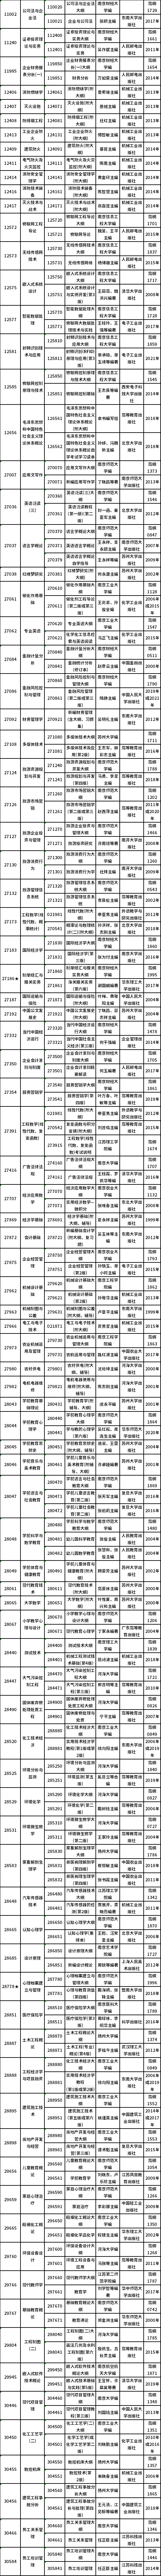 江苏省2022年10月自考开考课程教材计划表